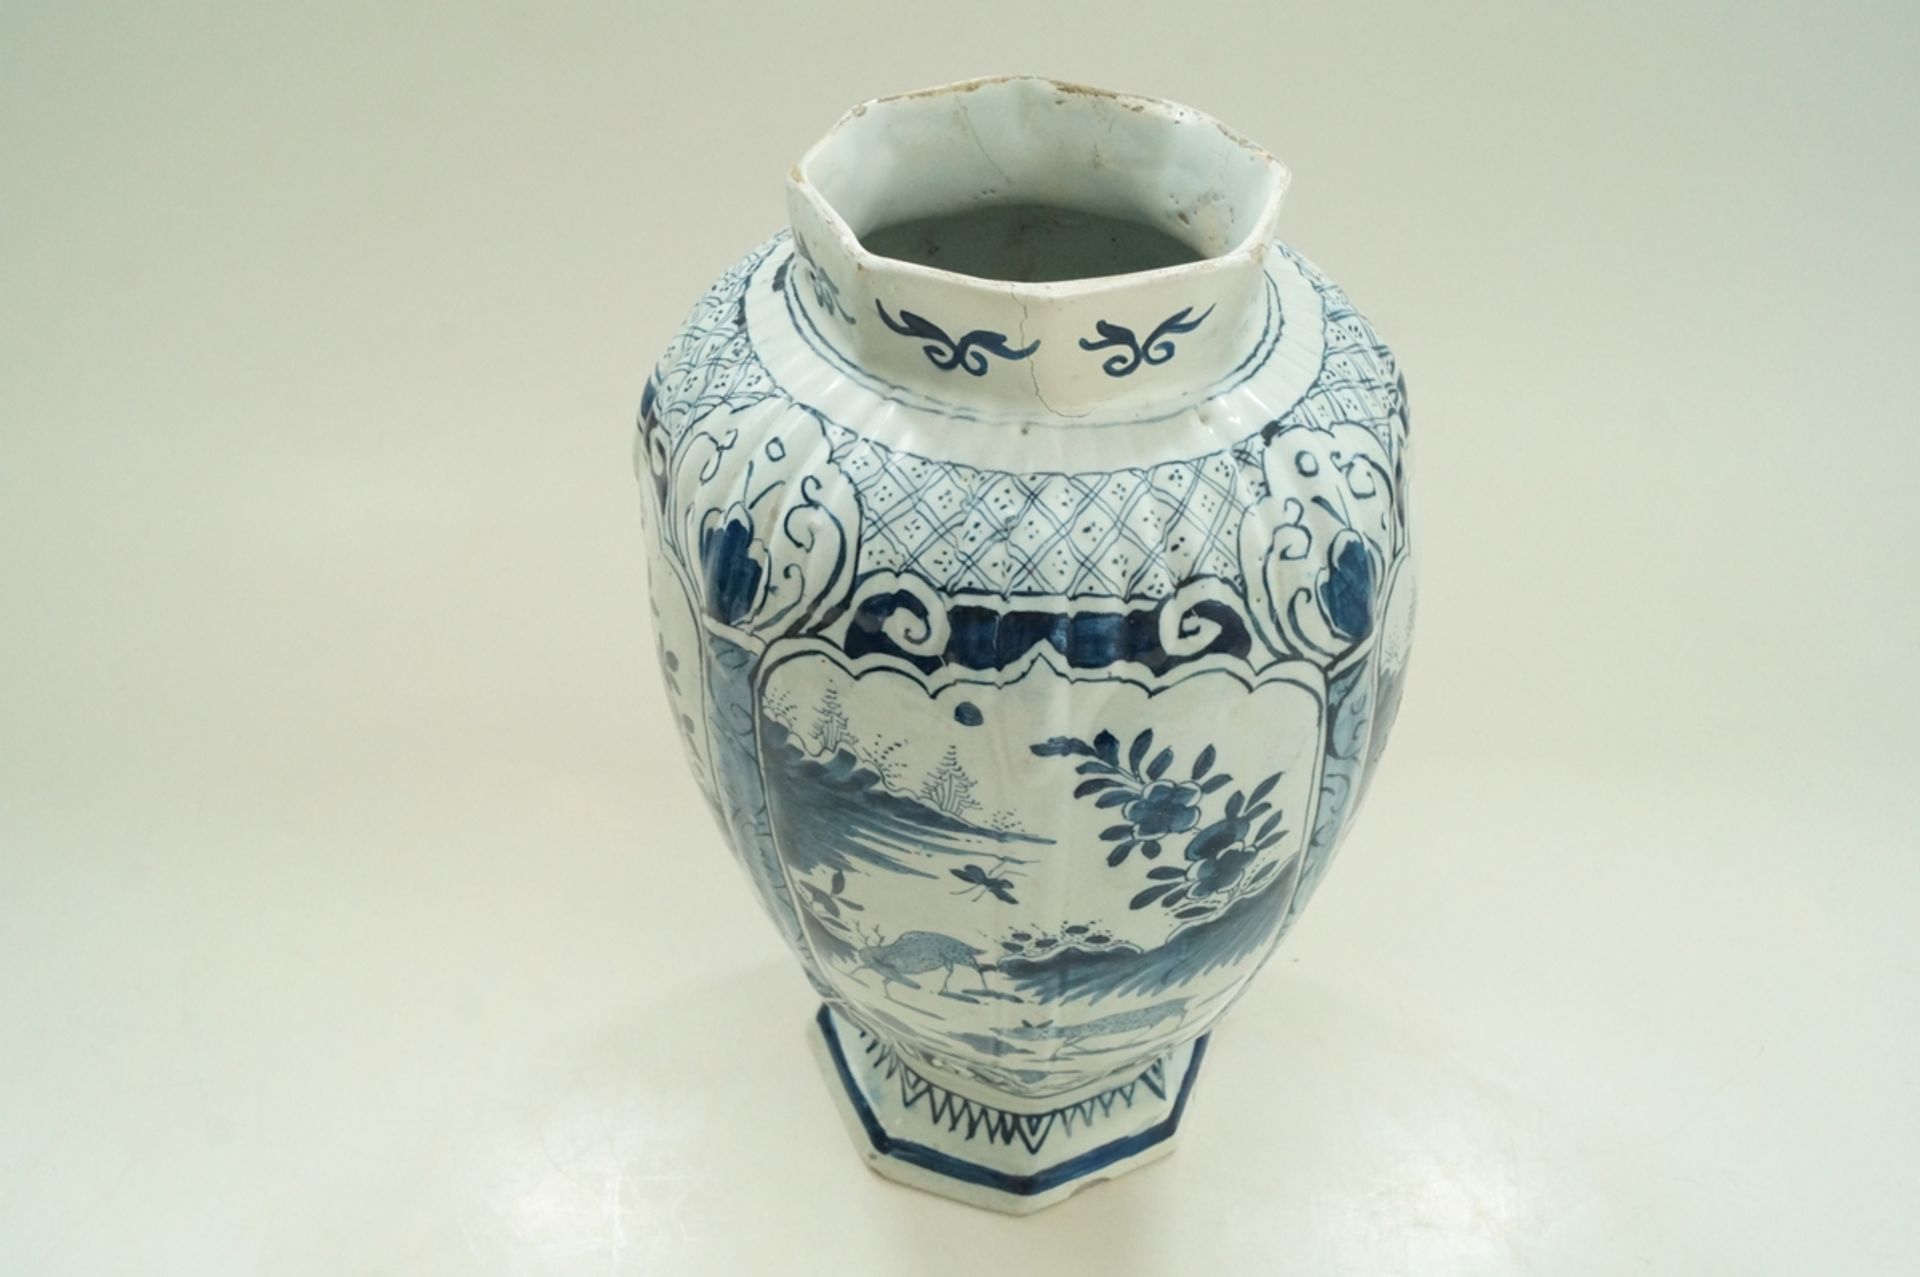 Große, niederländische Fayence-Vase, Zinnglasur, umlaufend in vier Kartuschen gleiche Rotwild-Szene - Bild 2 aus 6